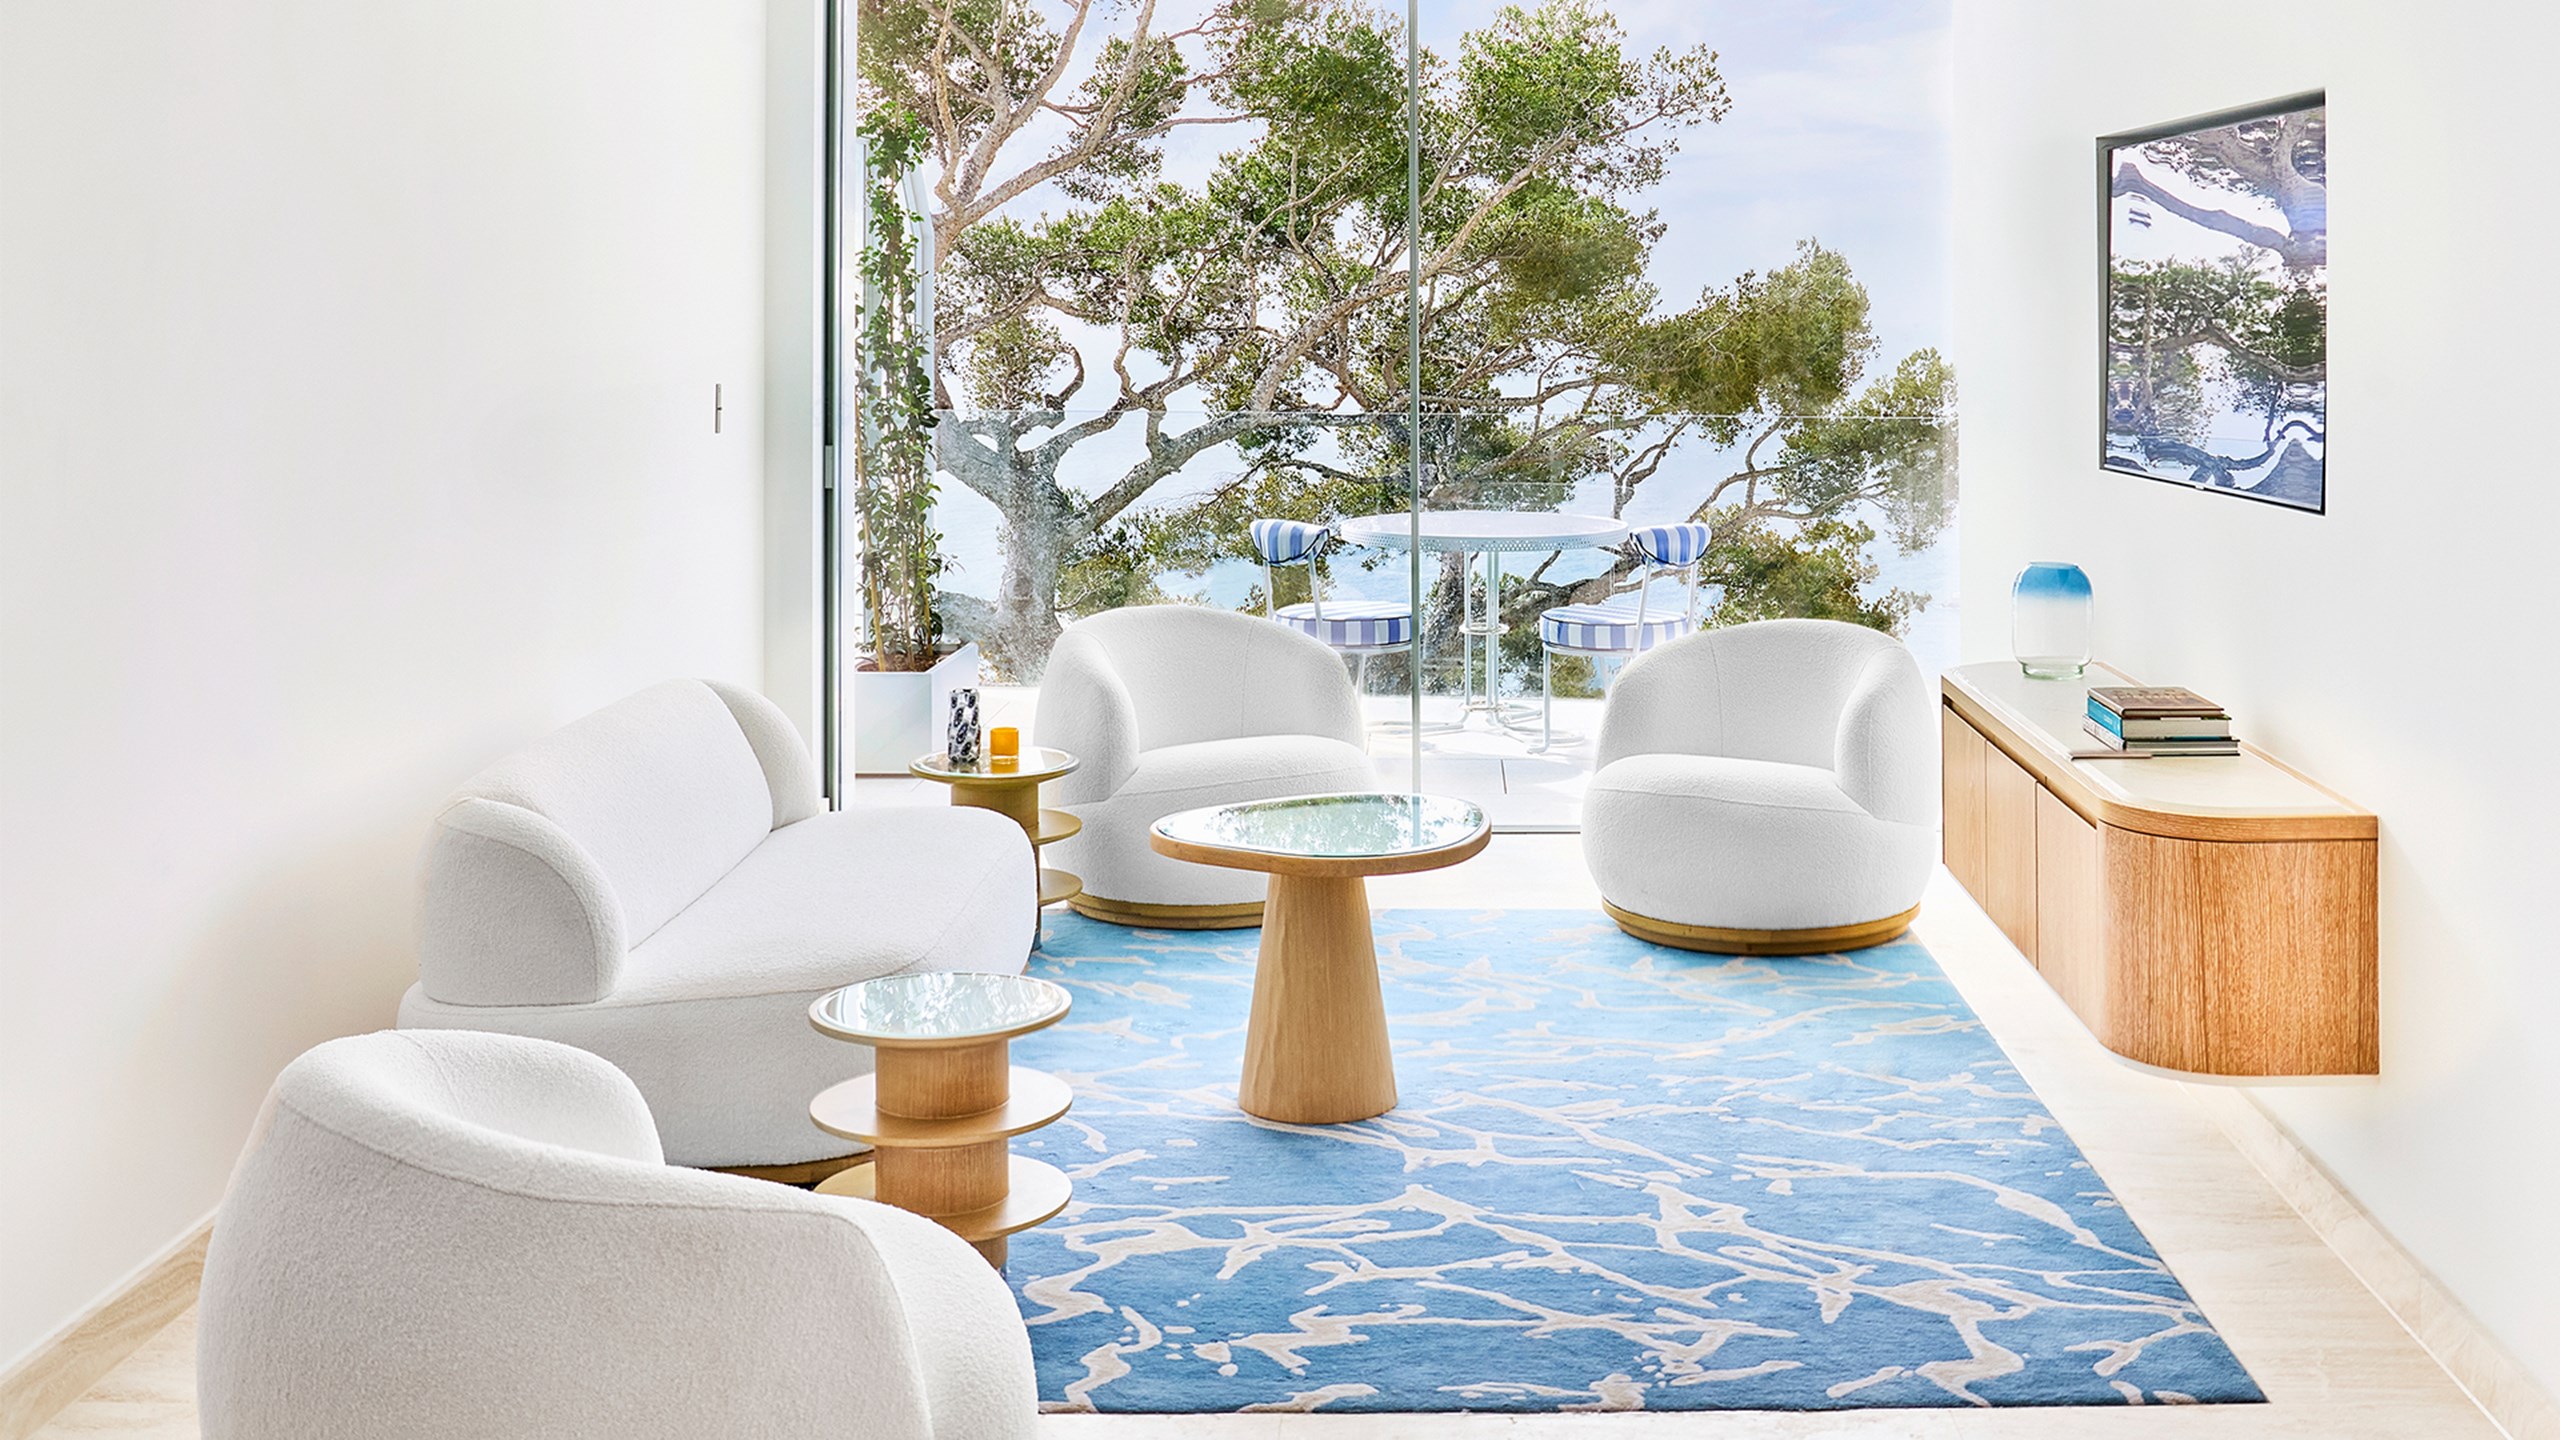 Suite Corniche - Salon avec canapés et table basse, et terrasse avec table et chaises.